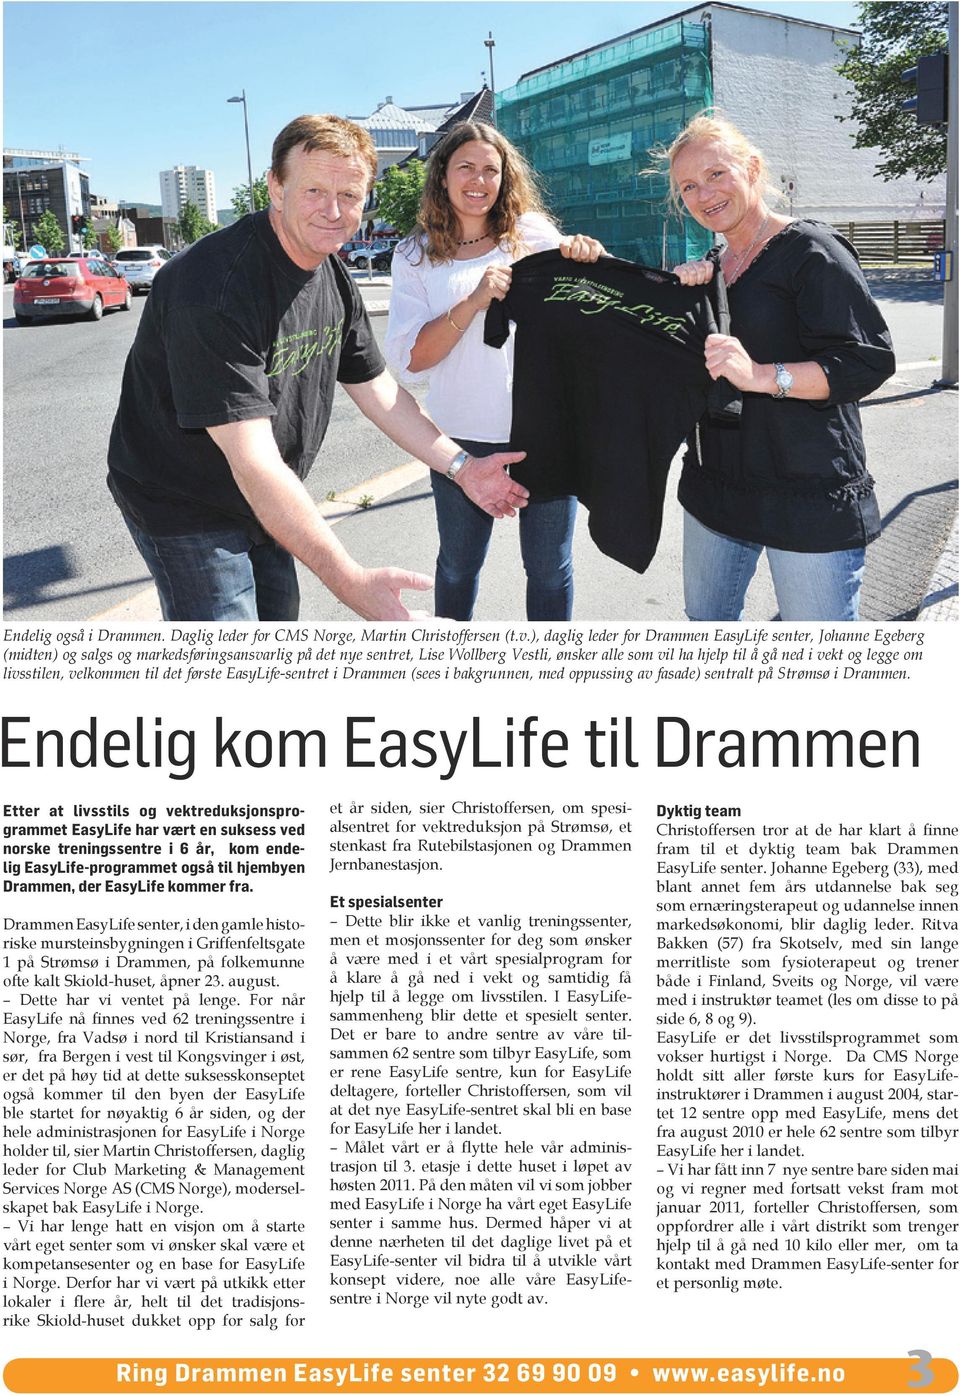 legge om livsstilen, velkommen til det første EasyLife-sentret i Drammen (sees i bakgrunnen, med oppussing av fasade) sentralt på Strømsø i Drammen.